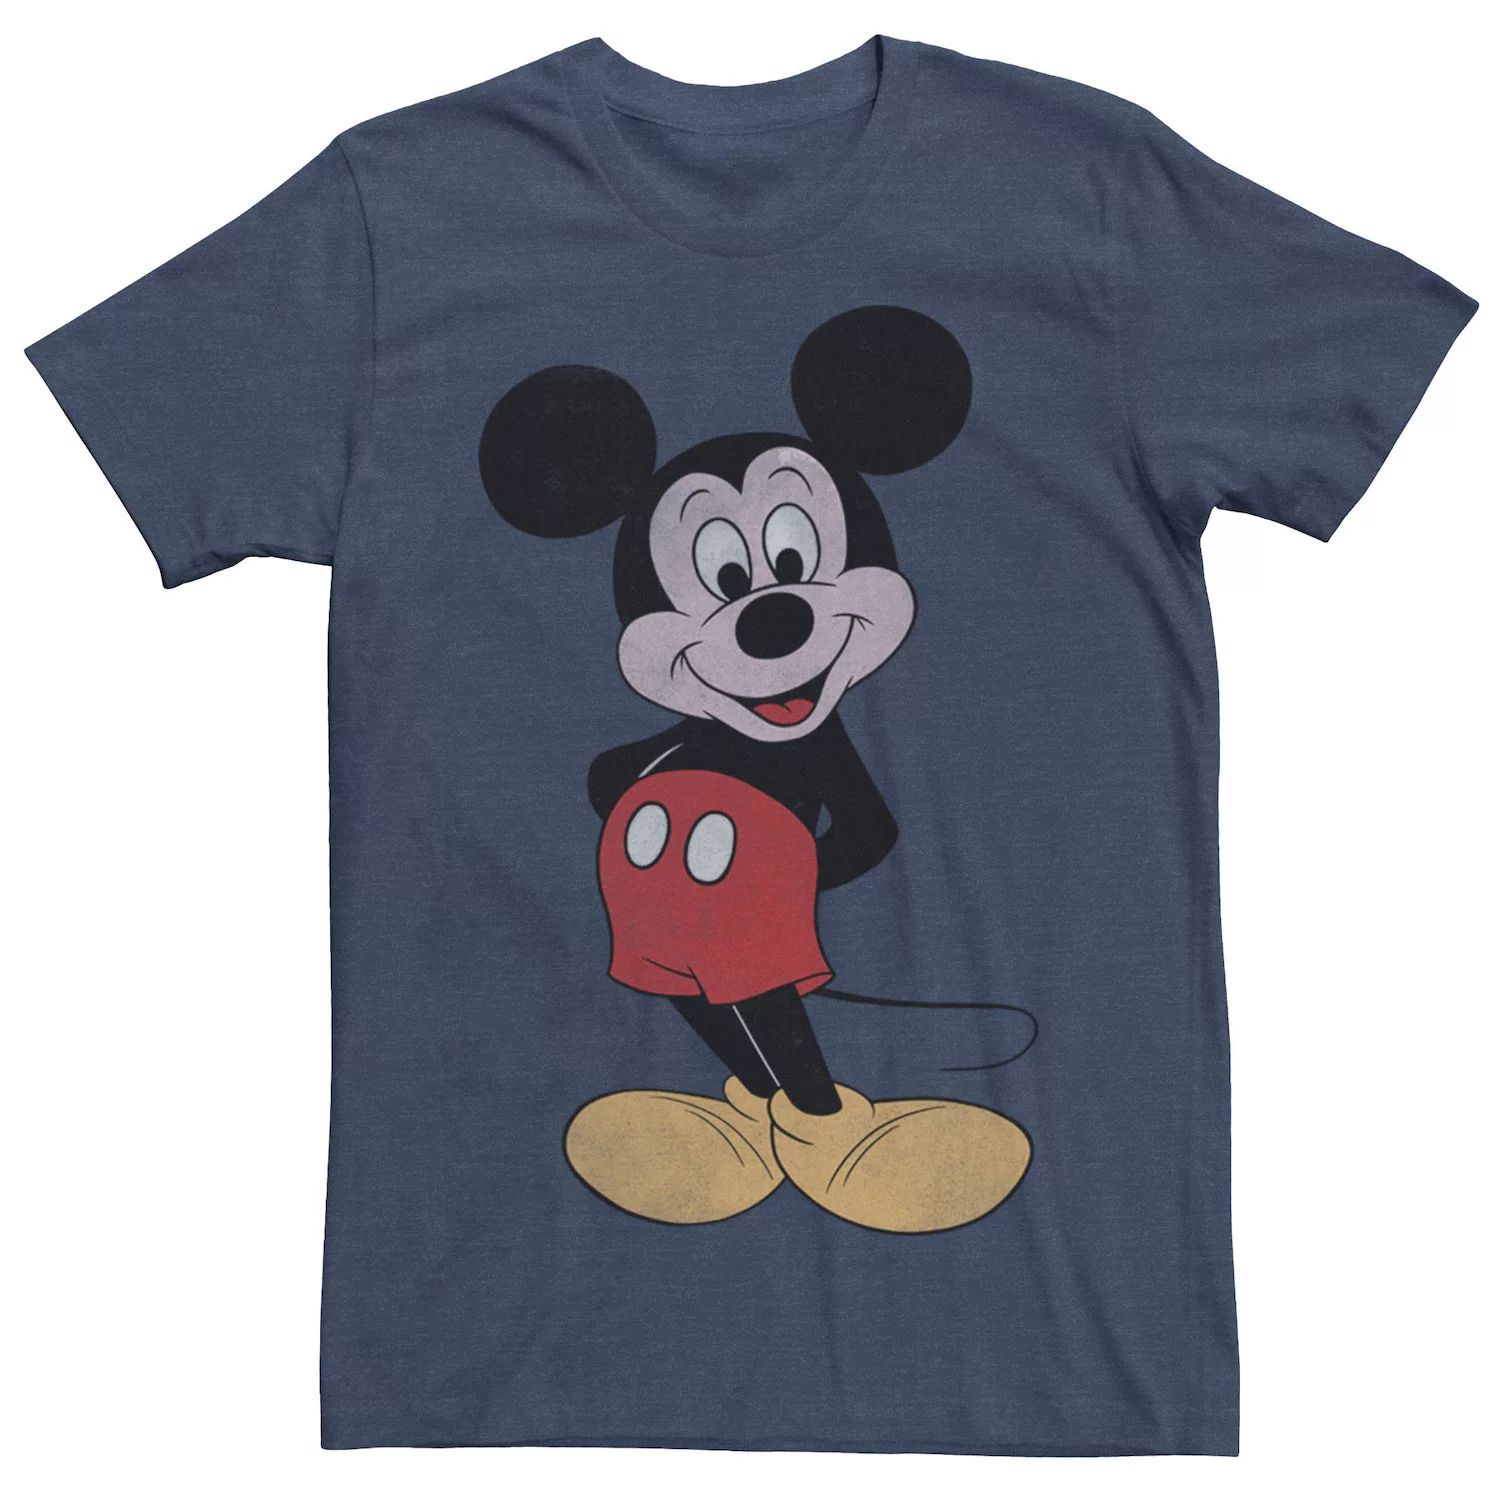 Мужская винтажная футболка с Микки Маусом в позе Микки Мауса Disney